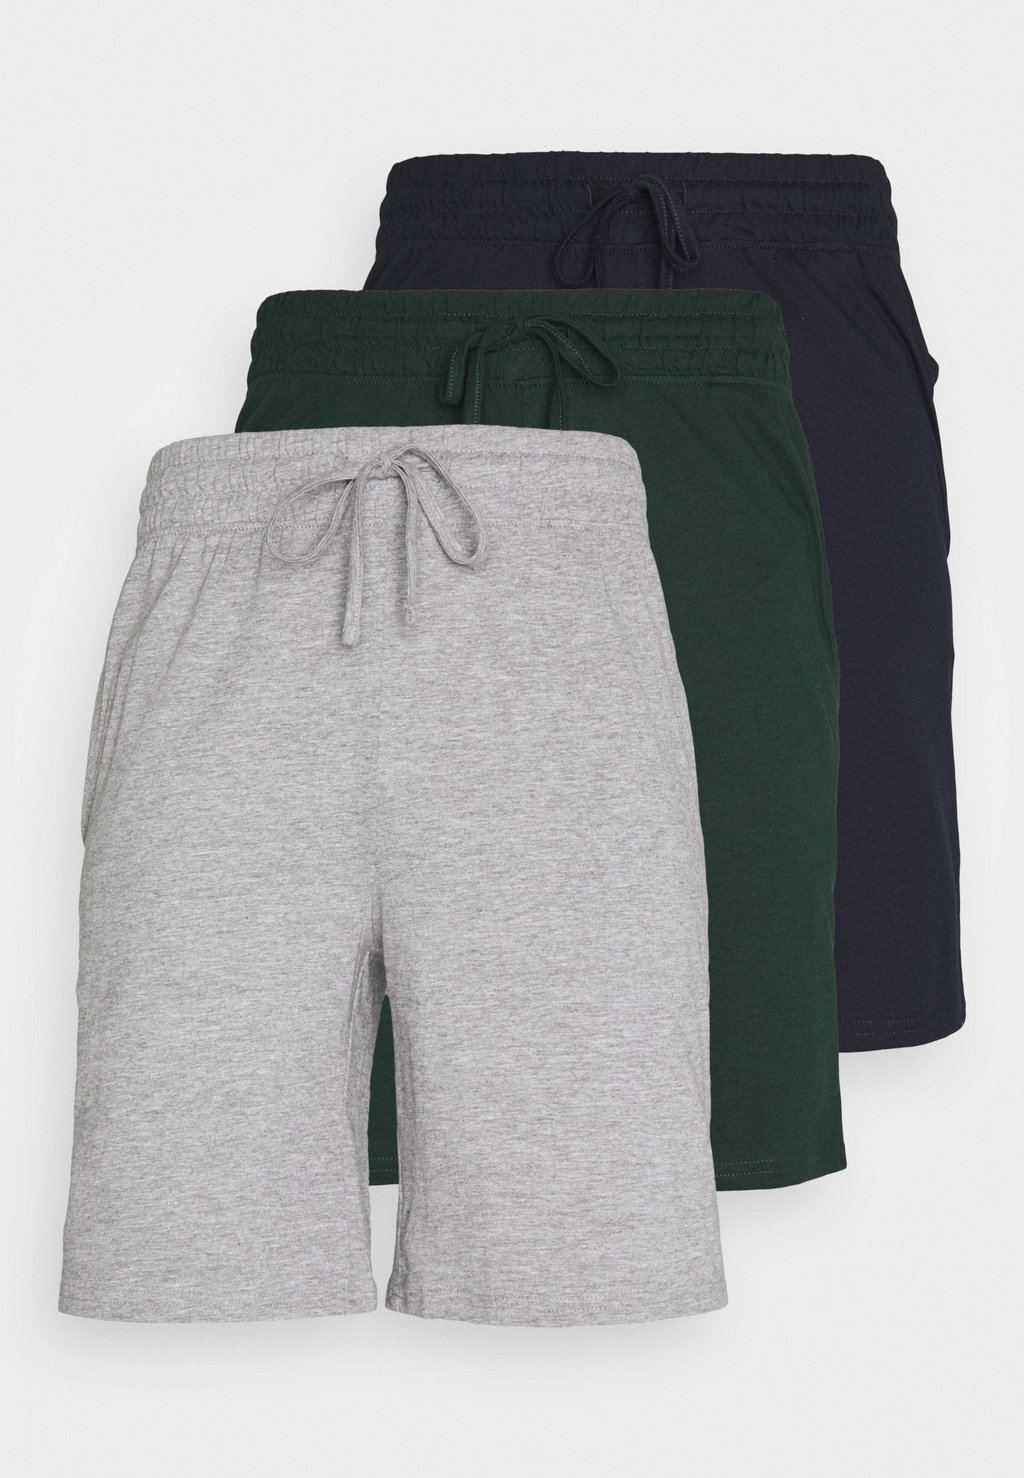 Пижамные штаны 3 ПАКЕТА Pier One, темно-синий/темно-серый в крапинку/темно-зеленый